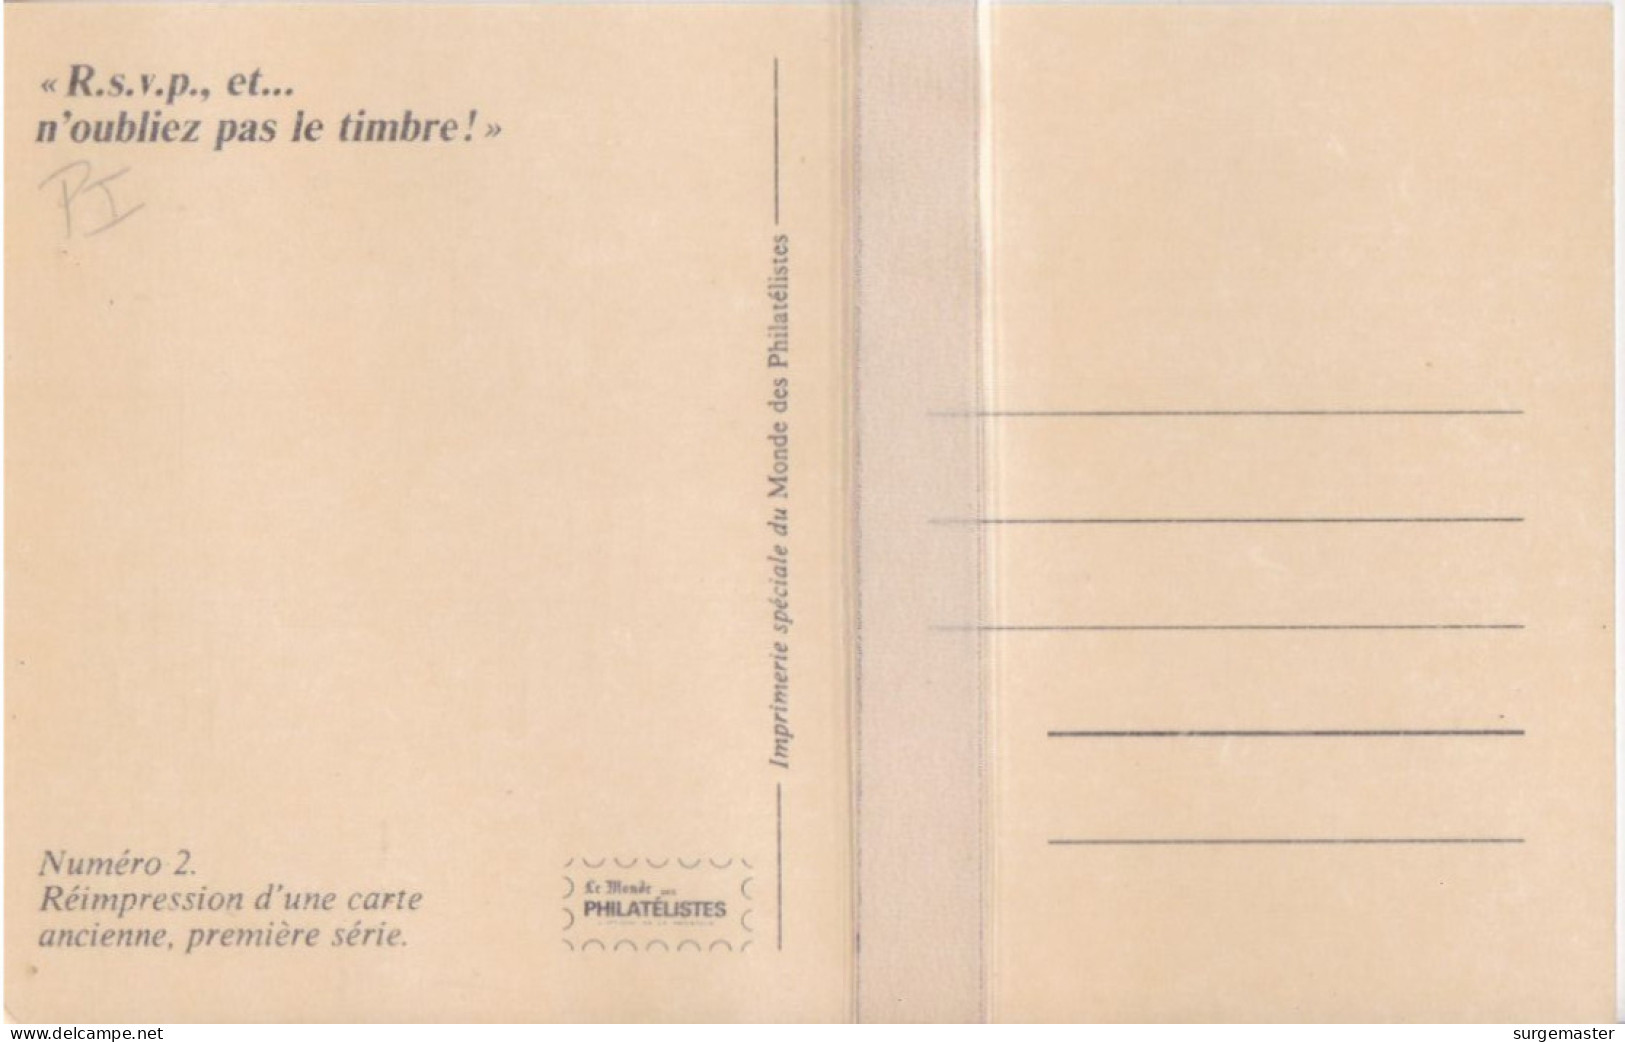 CPA REIMPRESSION D'UNE CARTE ANCIENNE '' R.S.V.P. N'OUBLIEZ PAS LE TIMBRE'' - Briefmarken (Abbildungen)